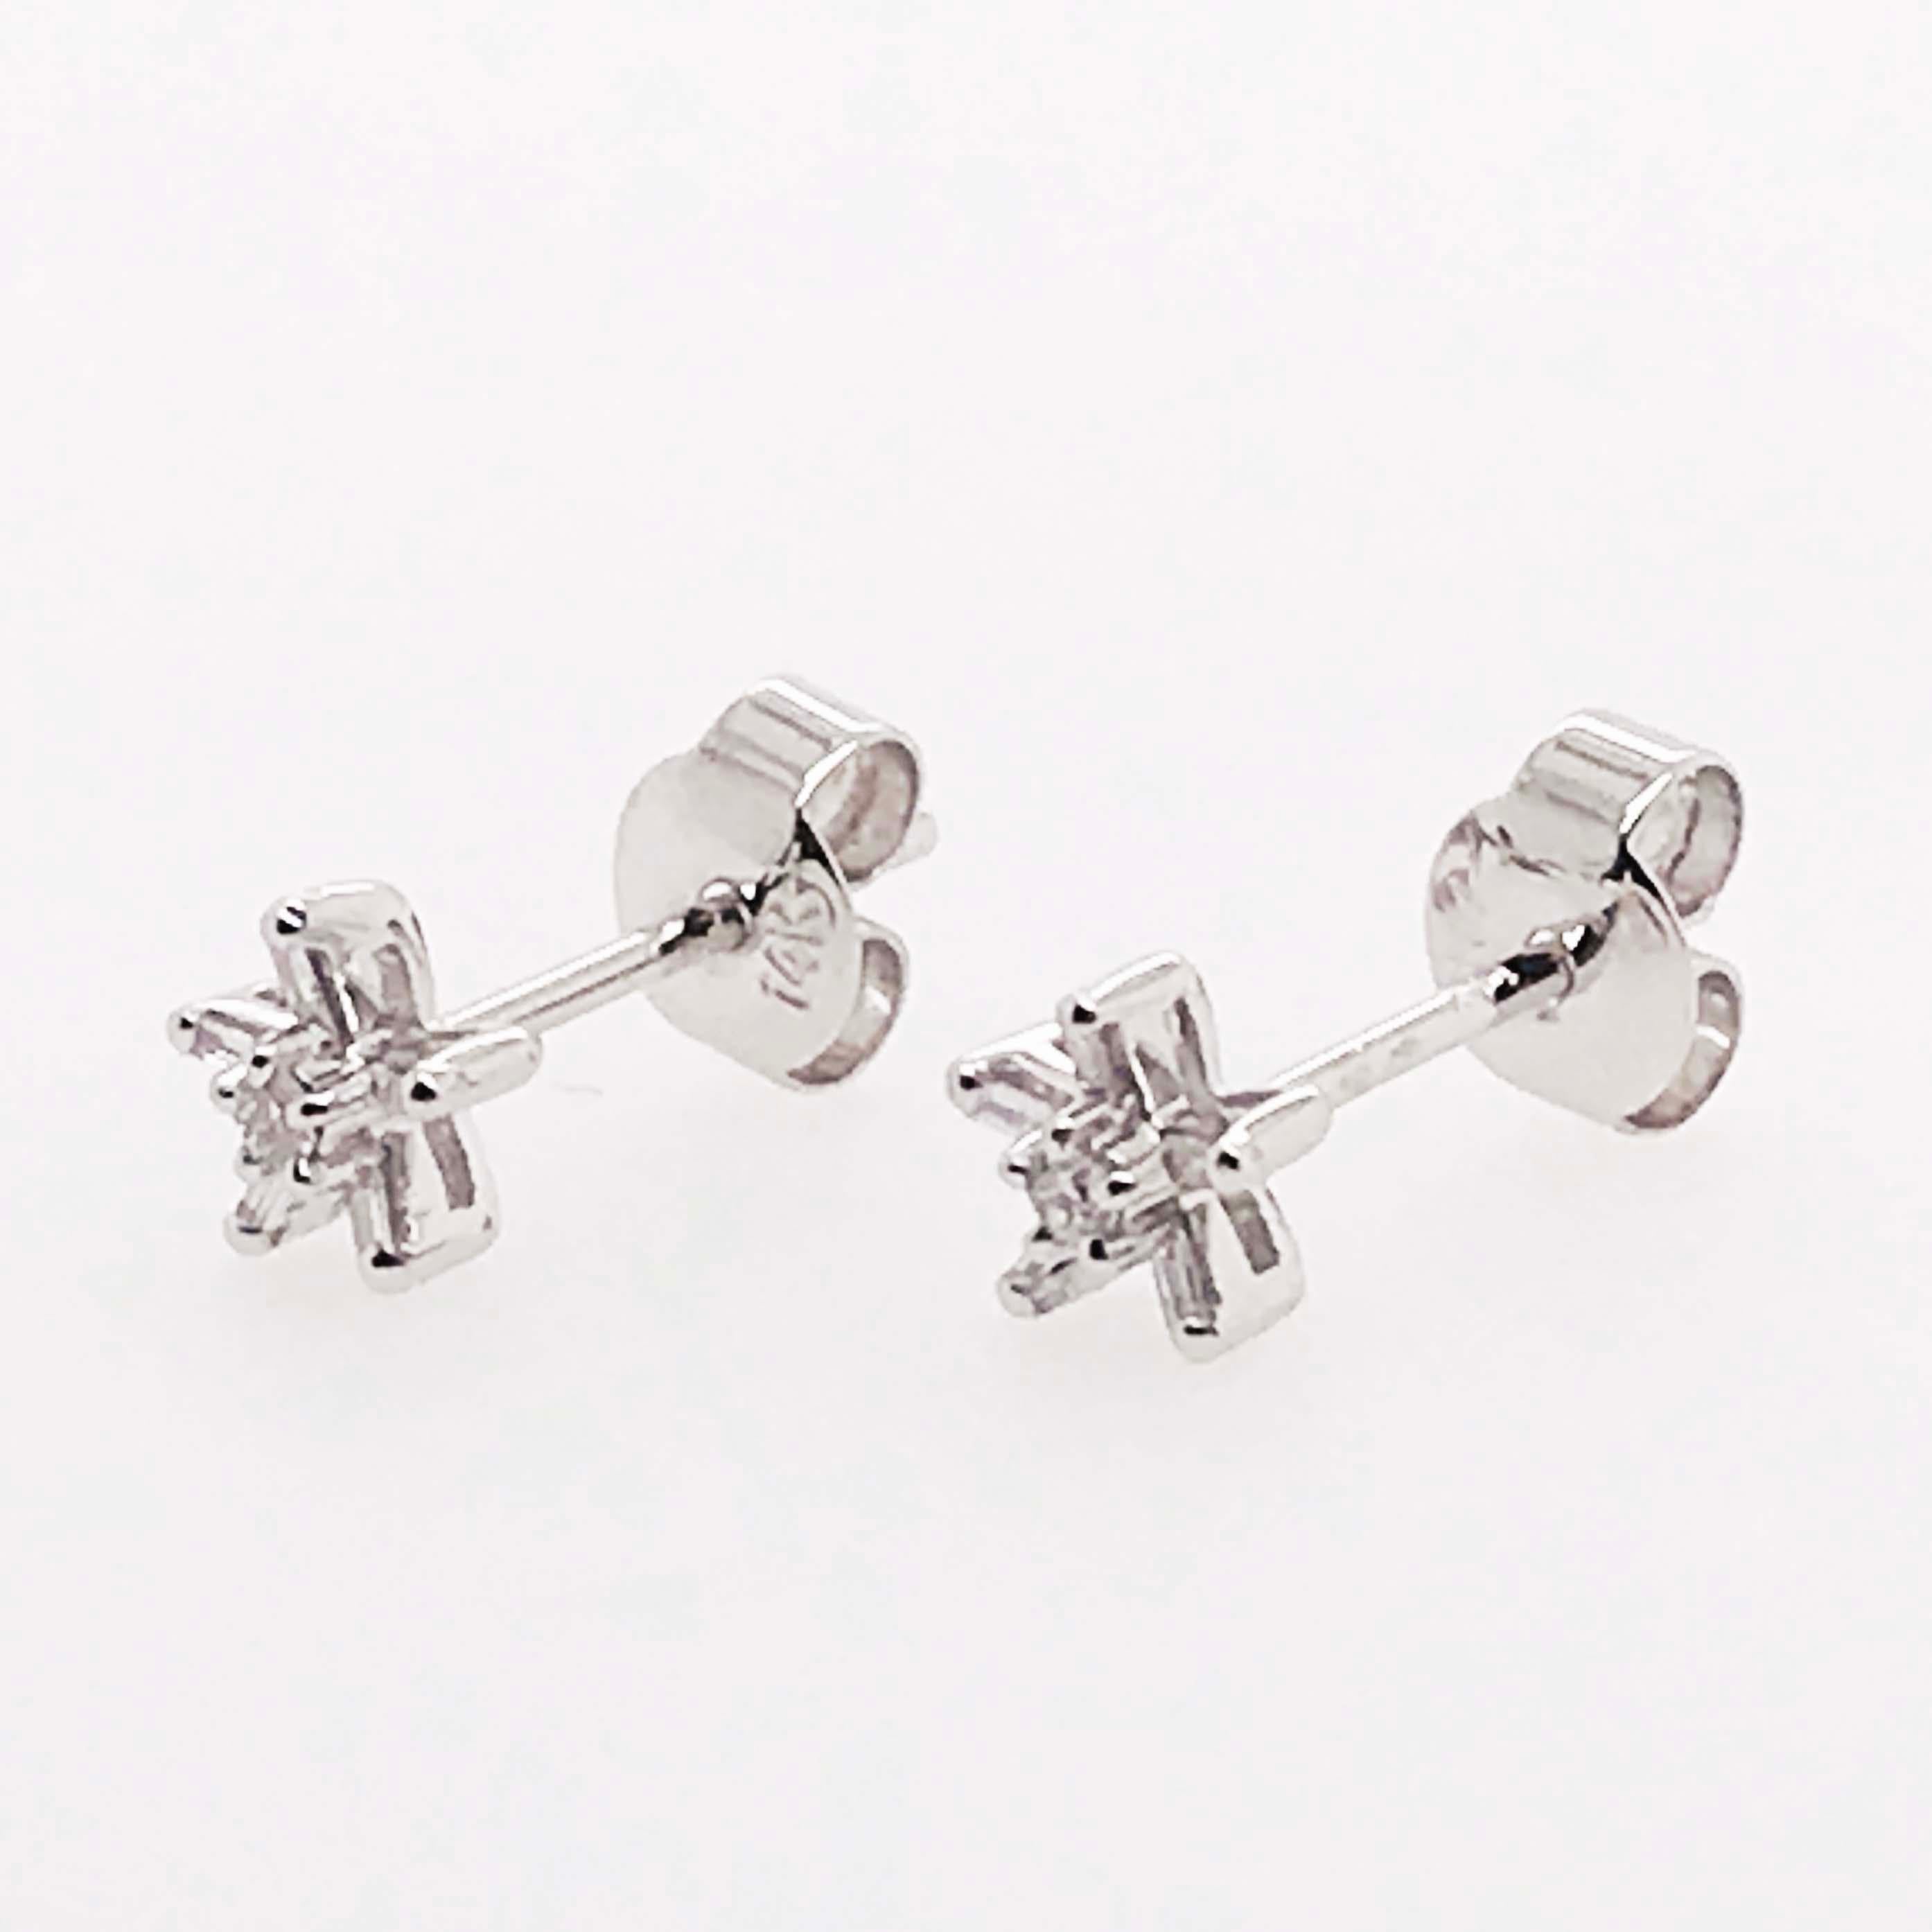 Artisan Diamond Star Flower Earring Studs, White Gold Diamond Star Earrings Flower Stud